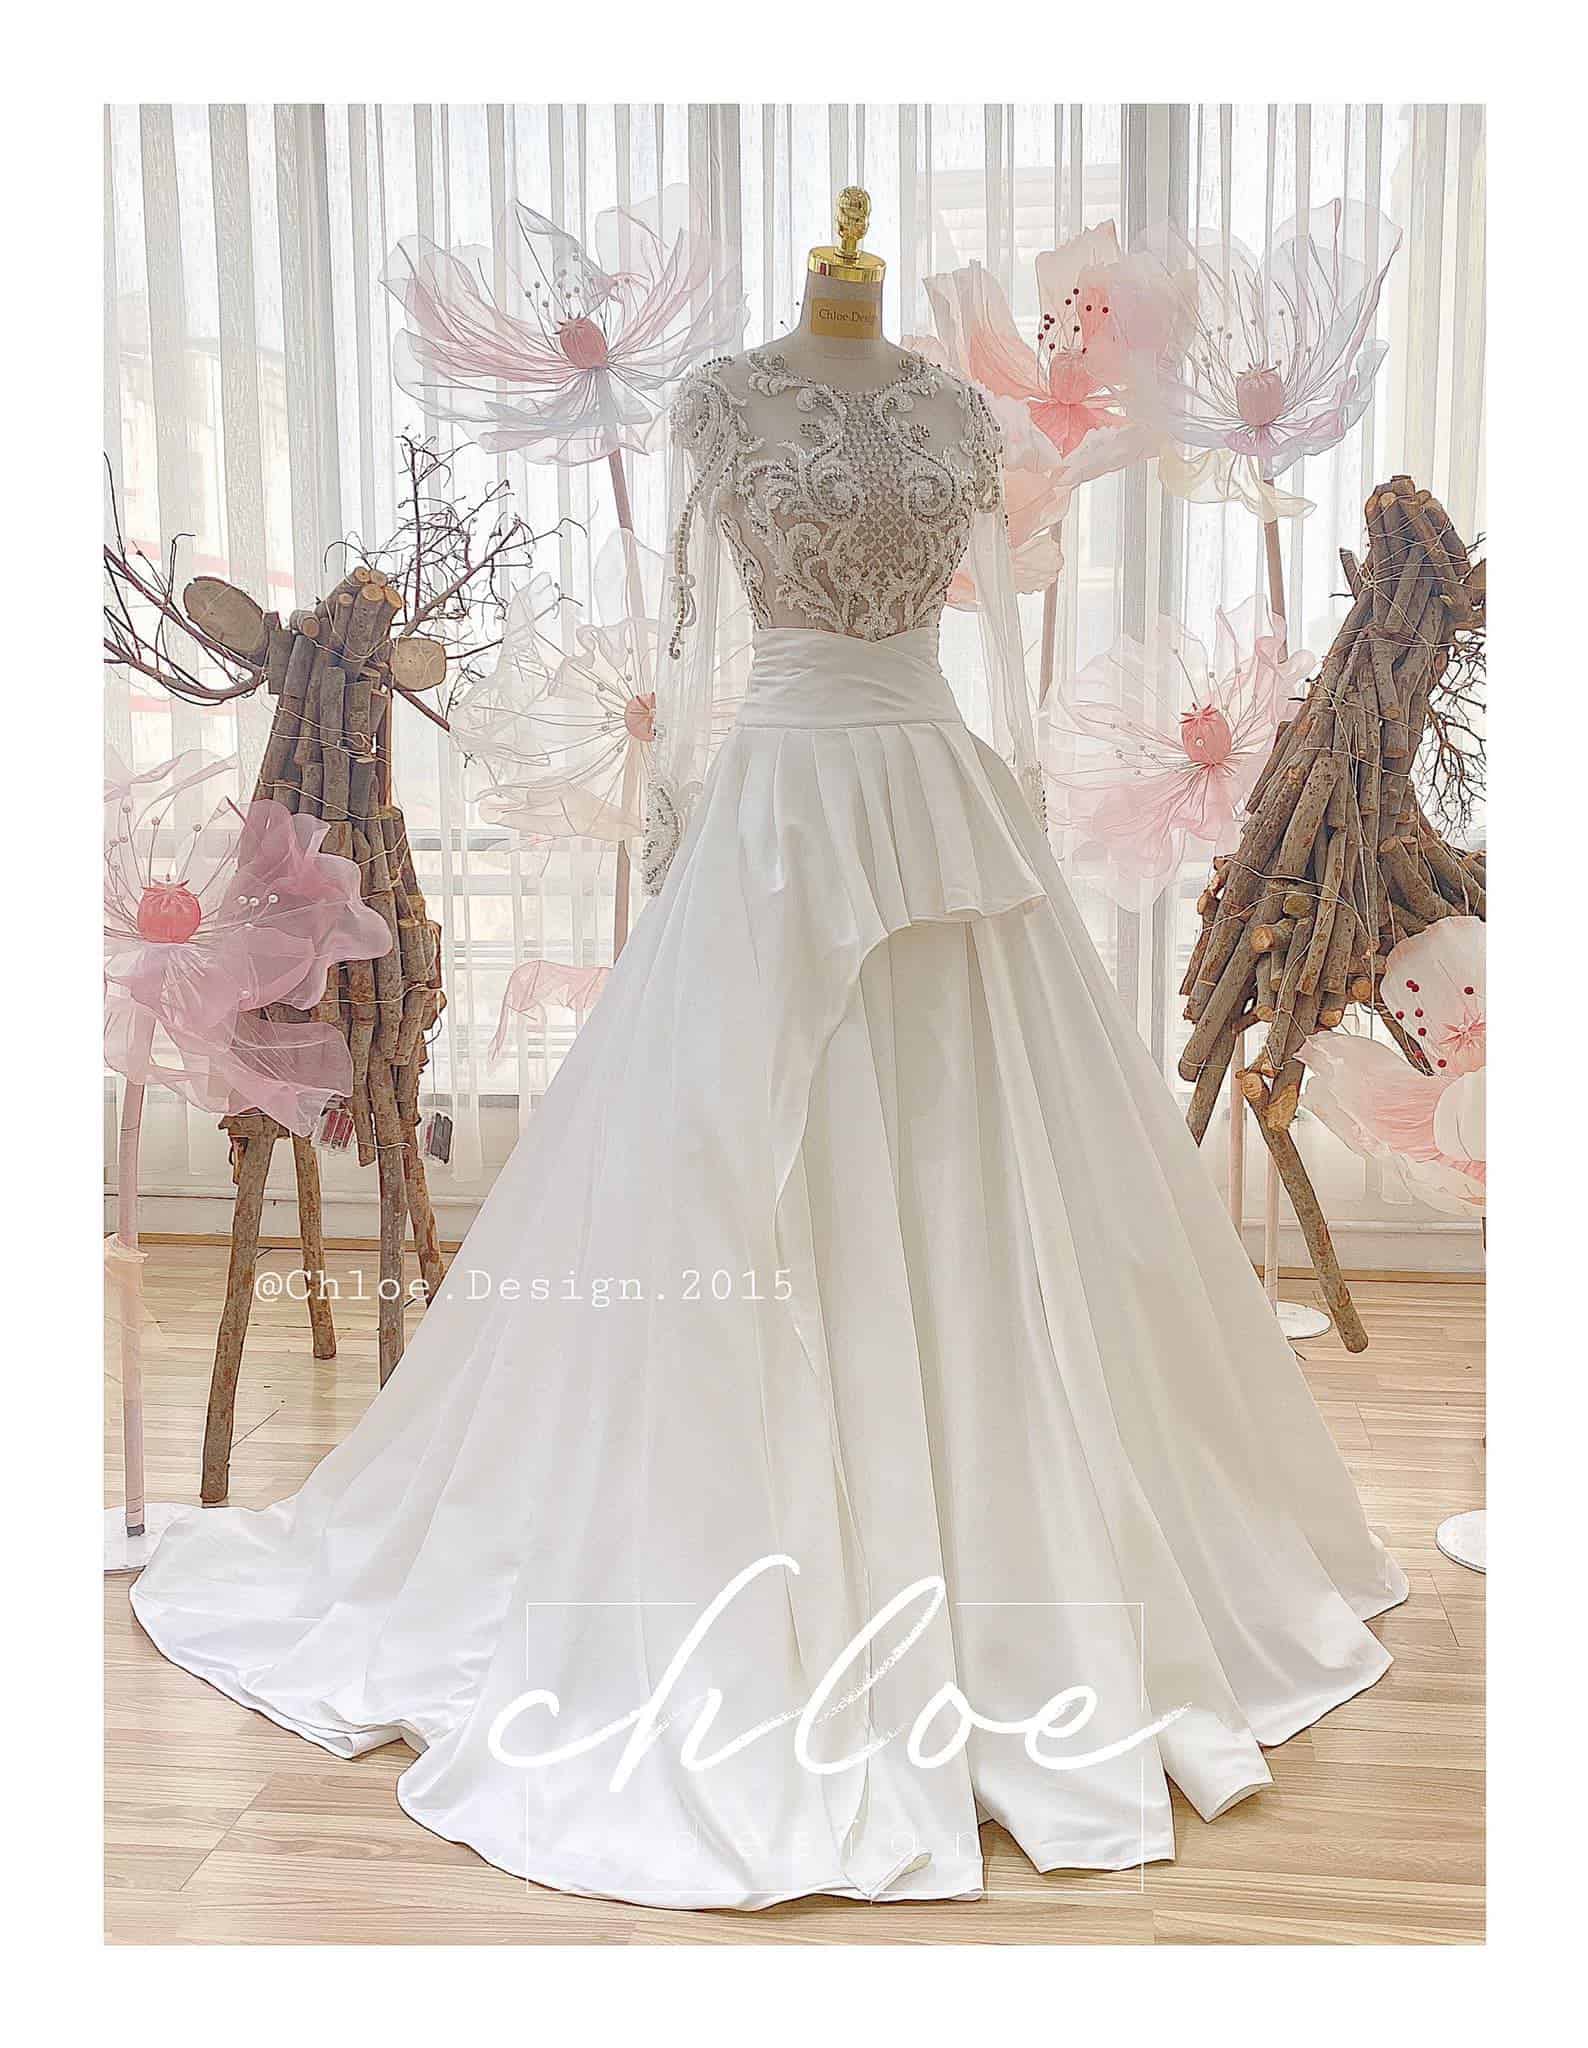 Rò rỉ thiết kế váy cưới của Nhã Phương